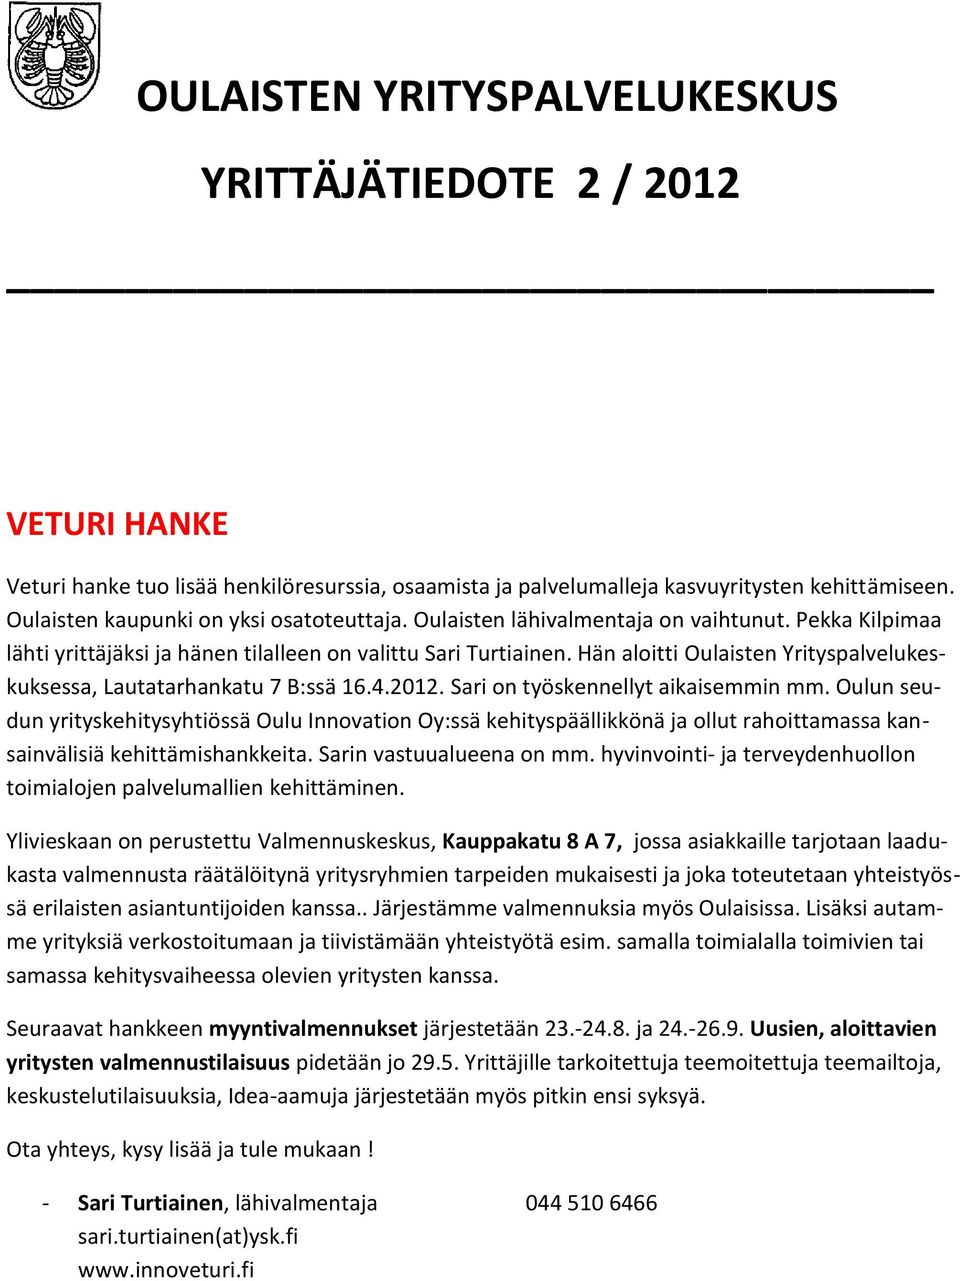 Hän aloitti Oulaisten Yrityspalvelukeskuksessa, Lautatarhankatu 7 B:ssä 16.4.2012. Sari on työskennellyt aikaisemmin mm.